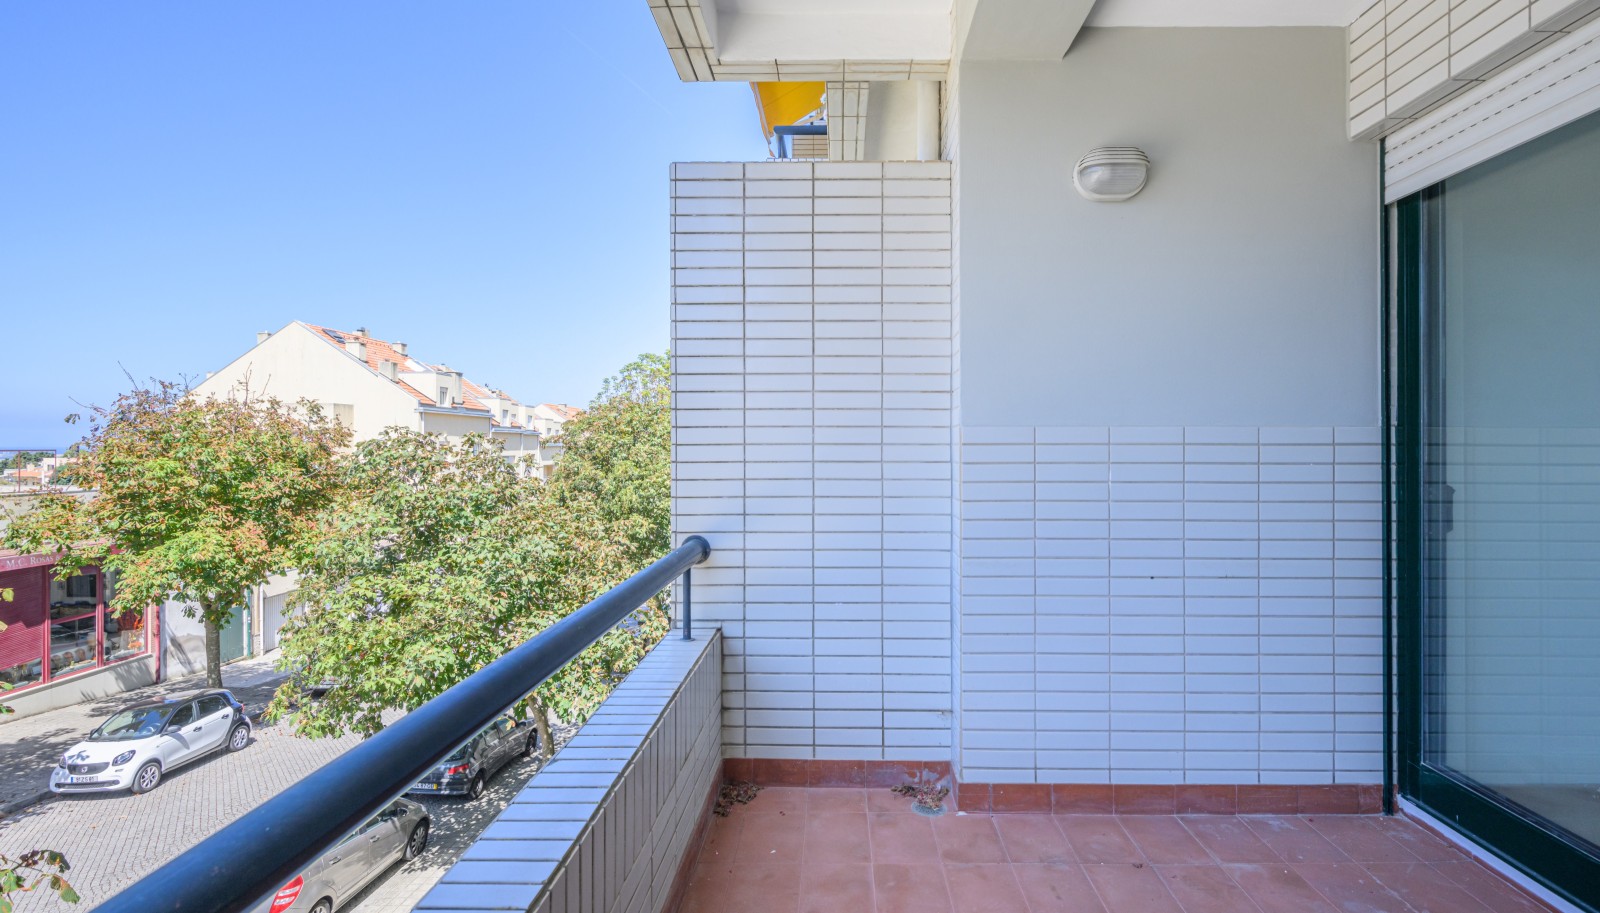 Apartamento T1+1 com varanda, para venda, na Foz do Douro, Porto, Portugal_236216